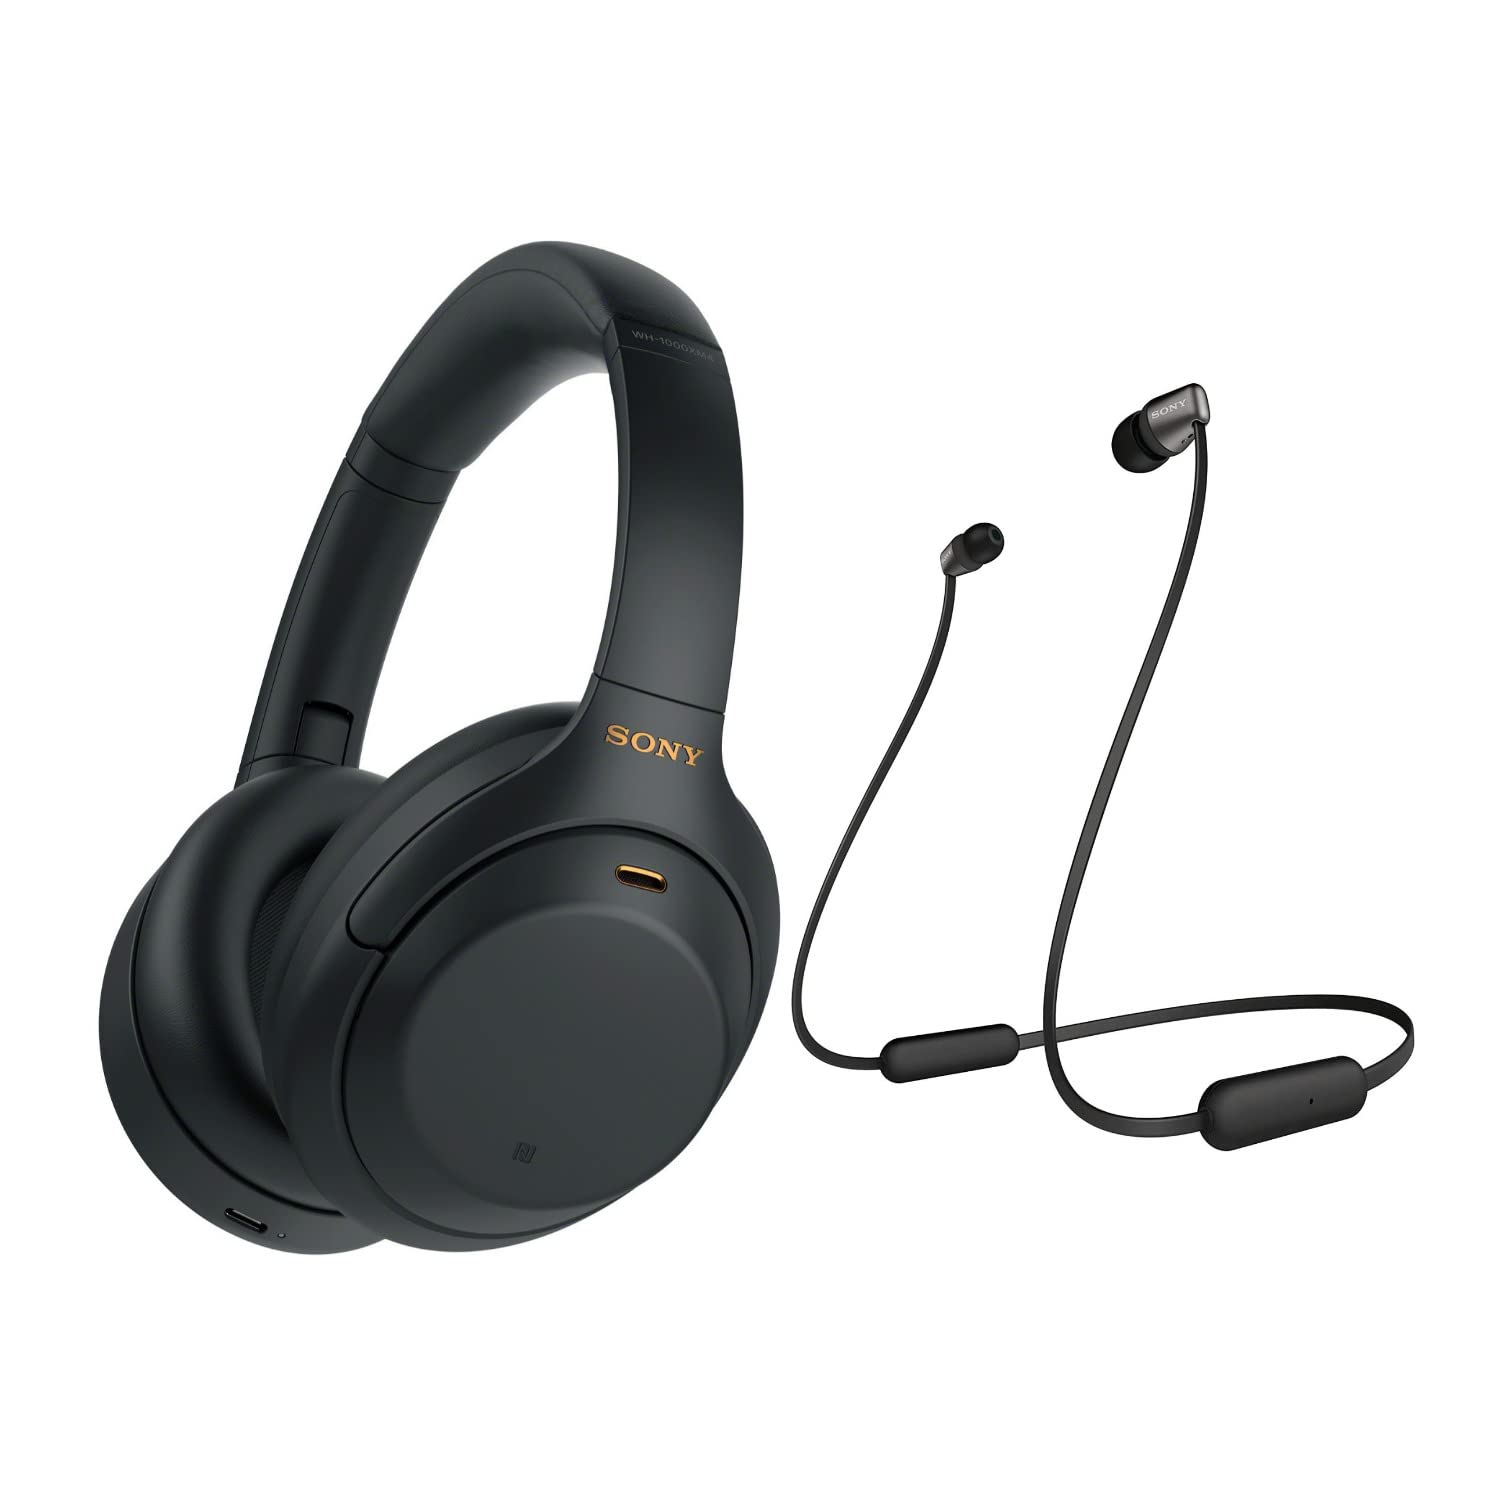 Sony WH-1000XM4 无线蓝牙降噪头戴式耳机（黑色），带入耳式无线耳机套装 - 便携式、持久电池、快速充电，（2 件）